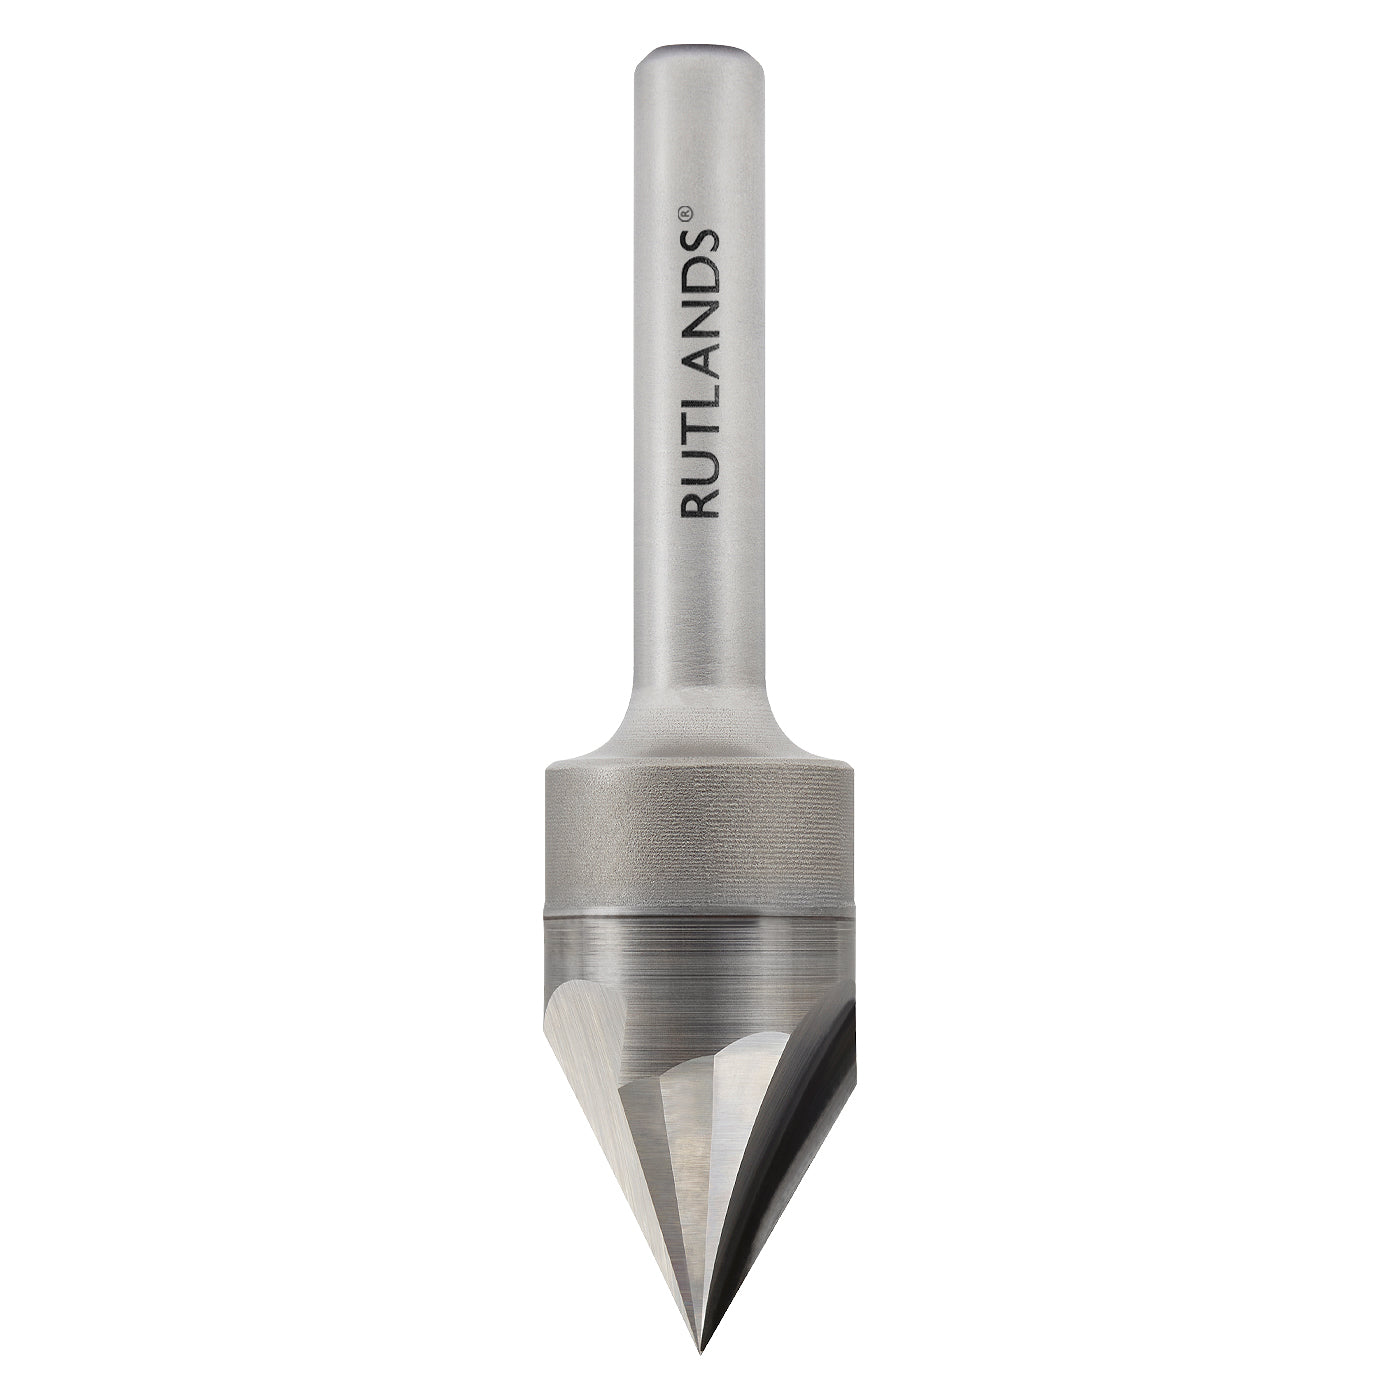 Solid Carbide - Engraver 3 Flute - D=15mm H=13mm A=30° L=62mm S=1/4"